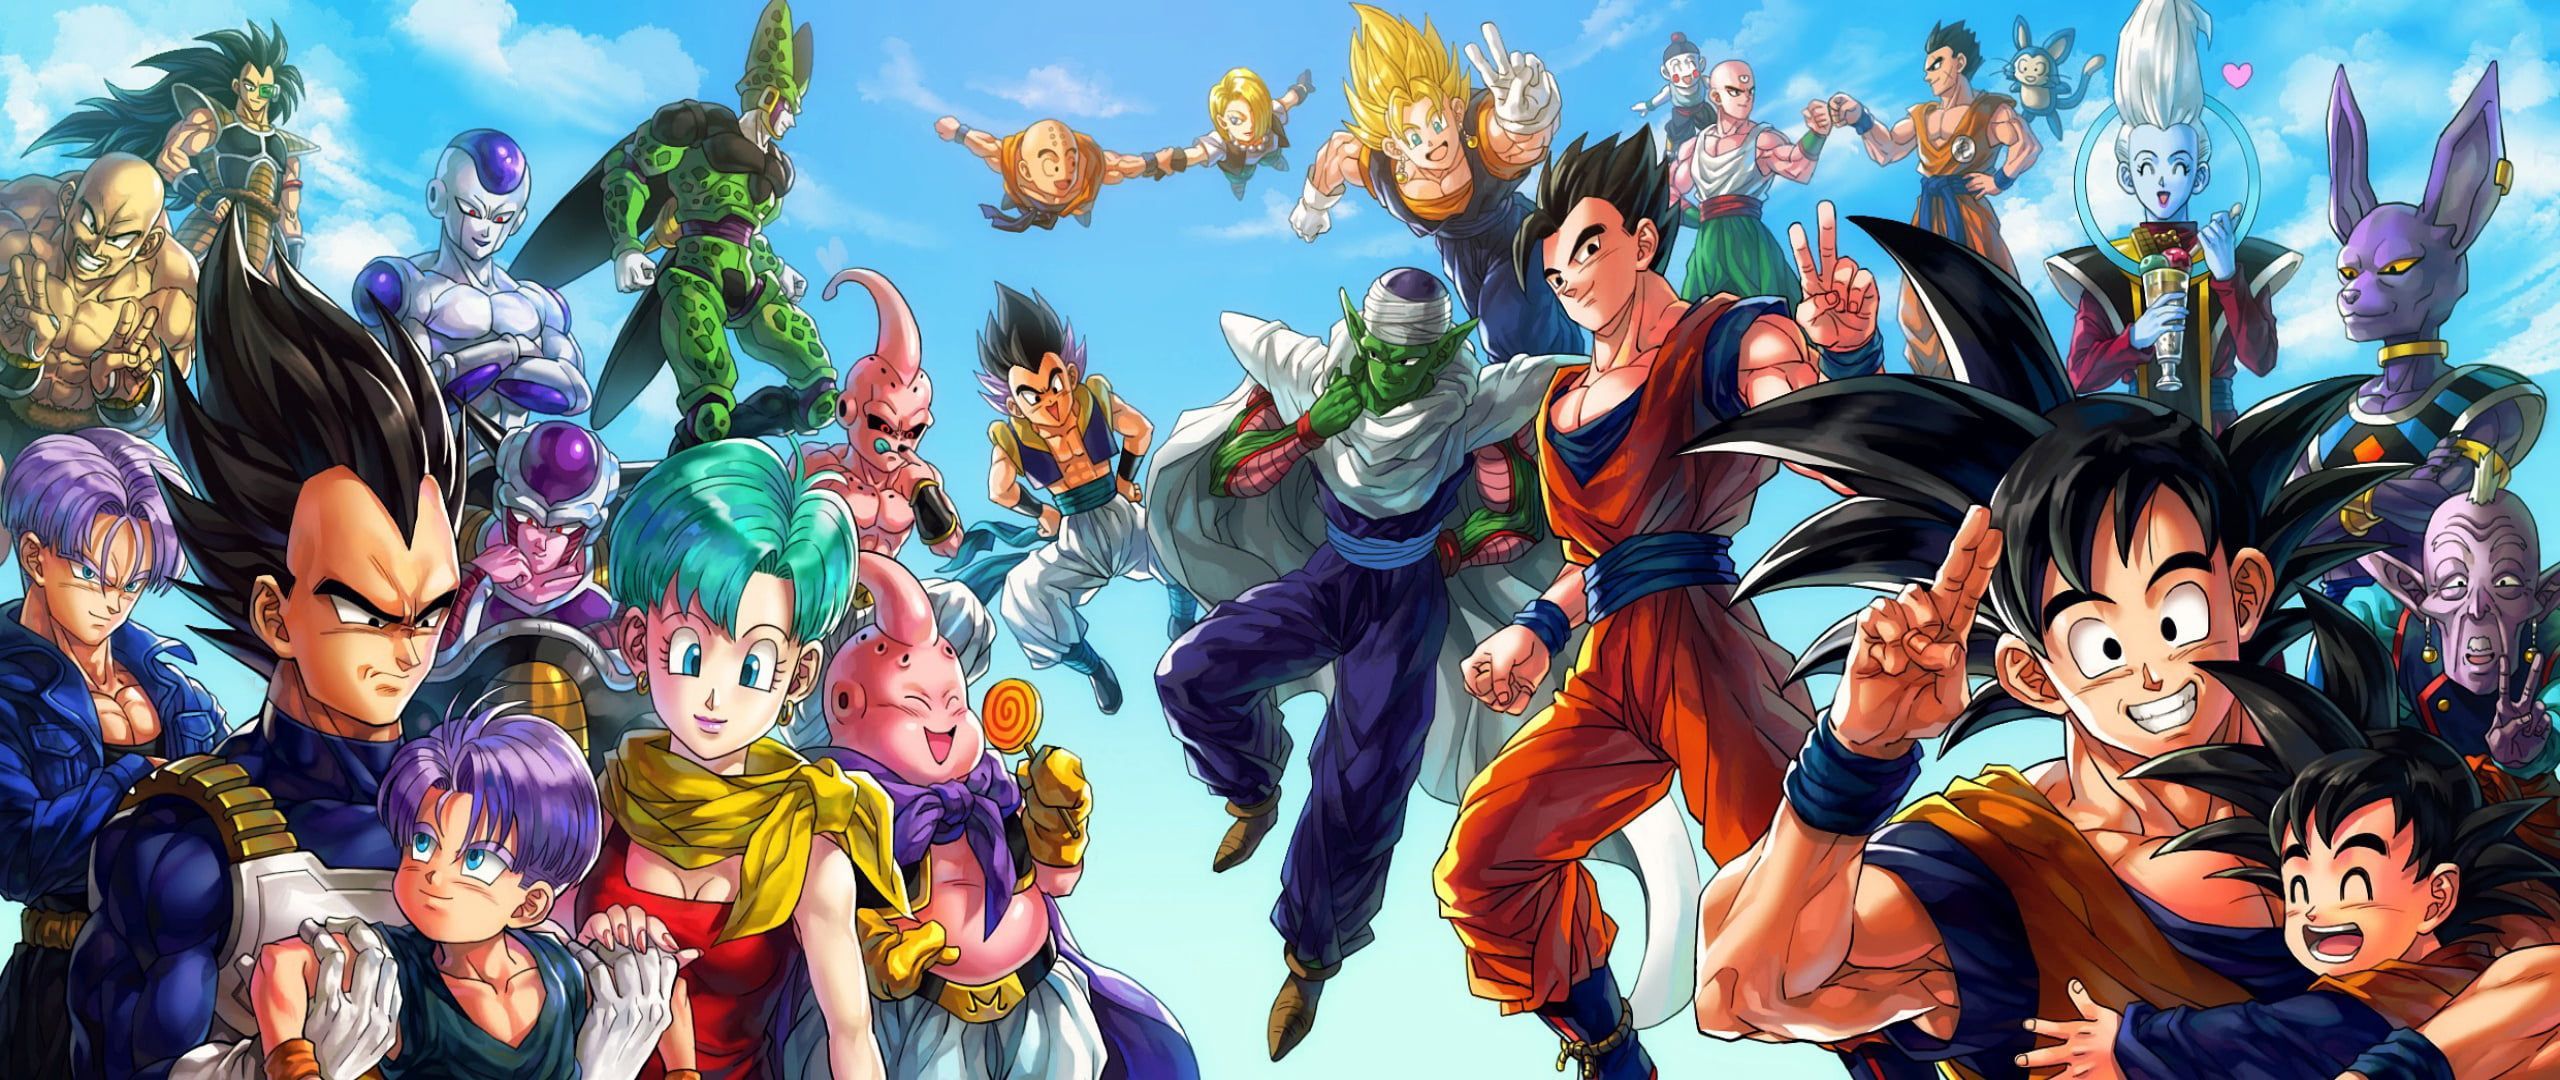 Dragon Ball characters illustration Dragon Ball Z #sayan Son Goku Son Gohan #Gohan #trunks. Dragon ball wallpaper, Dual monitor wallpaper, Character illustration